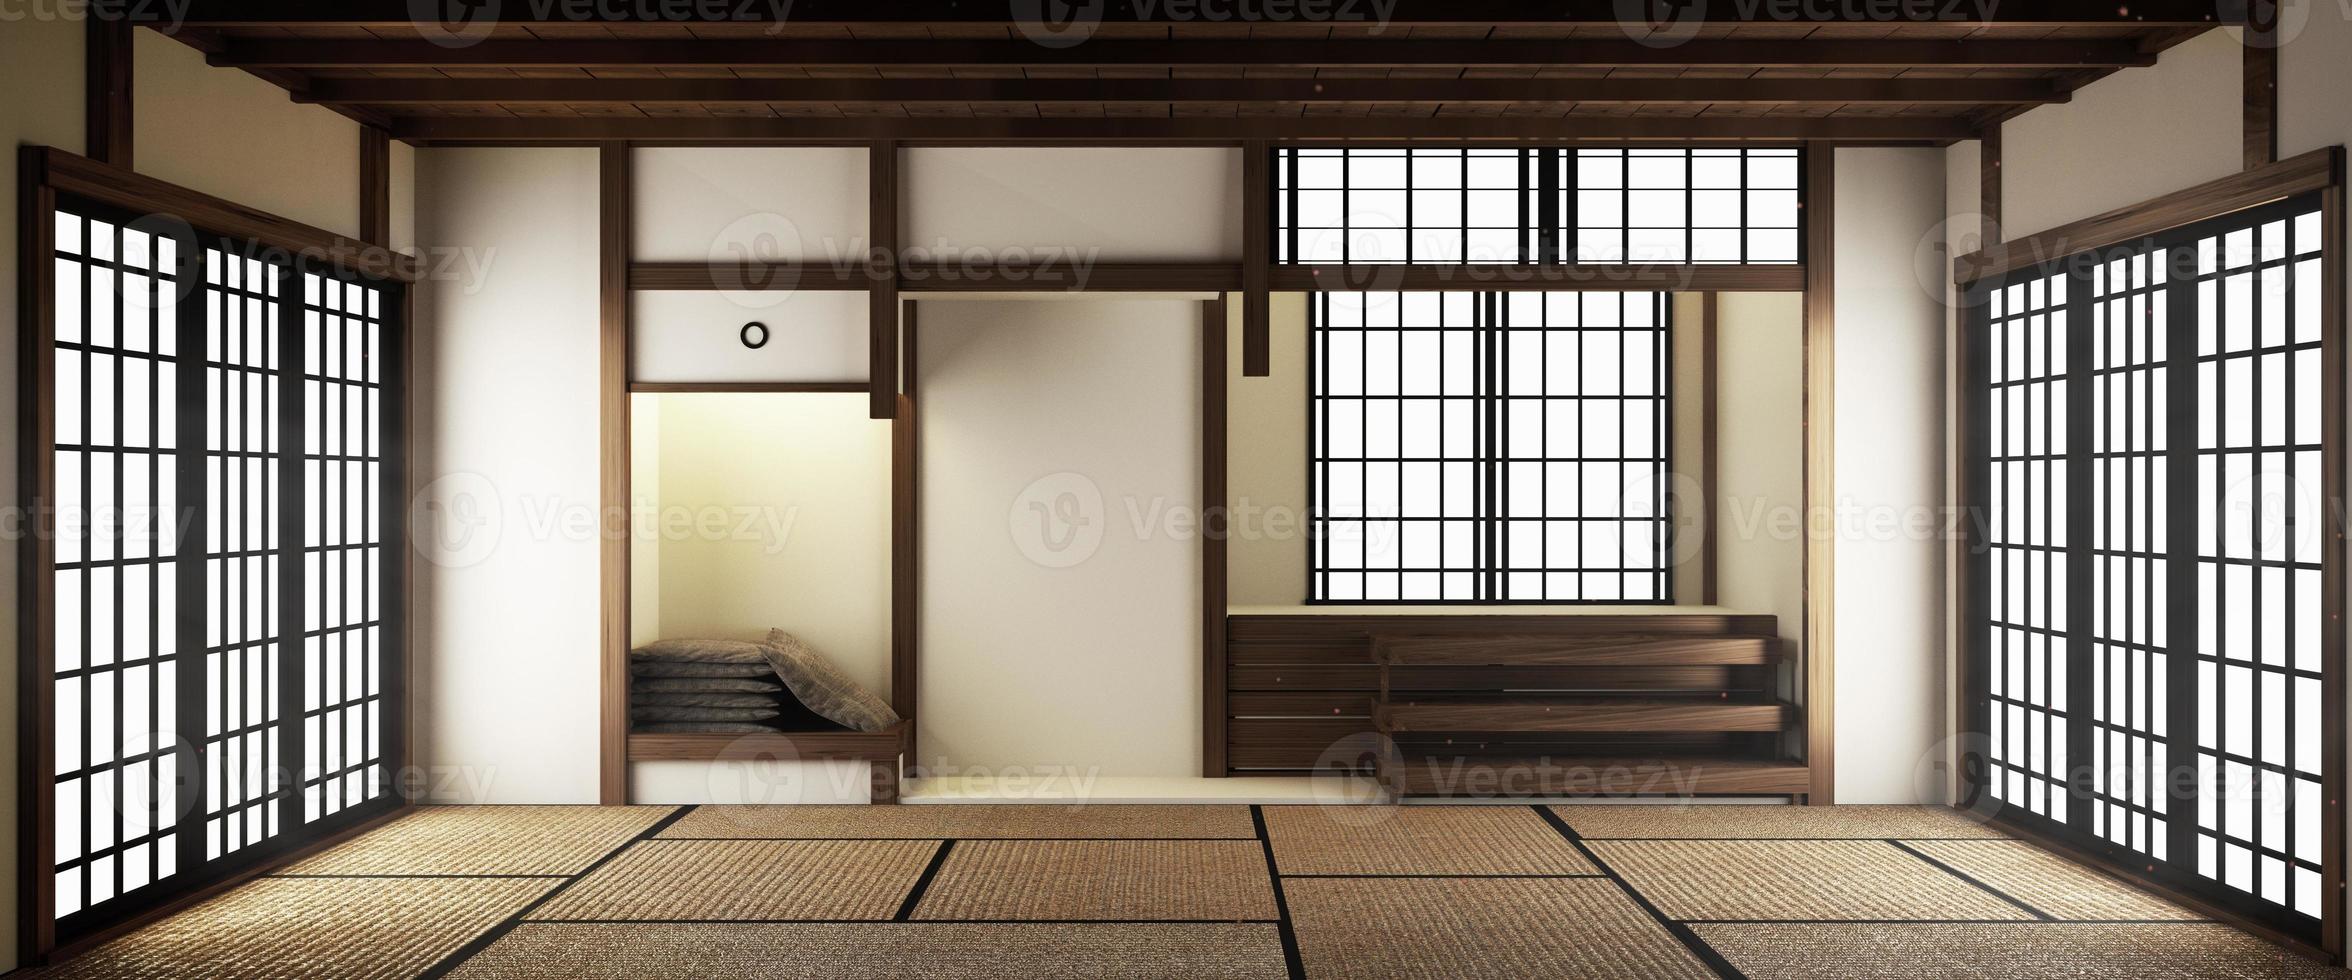 salon de style japonais moderne de luxe intérieur maquette, concevant le plus beau. rendu 3D photo